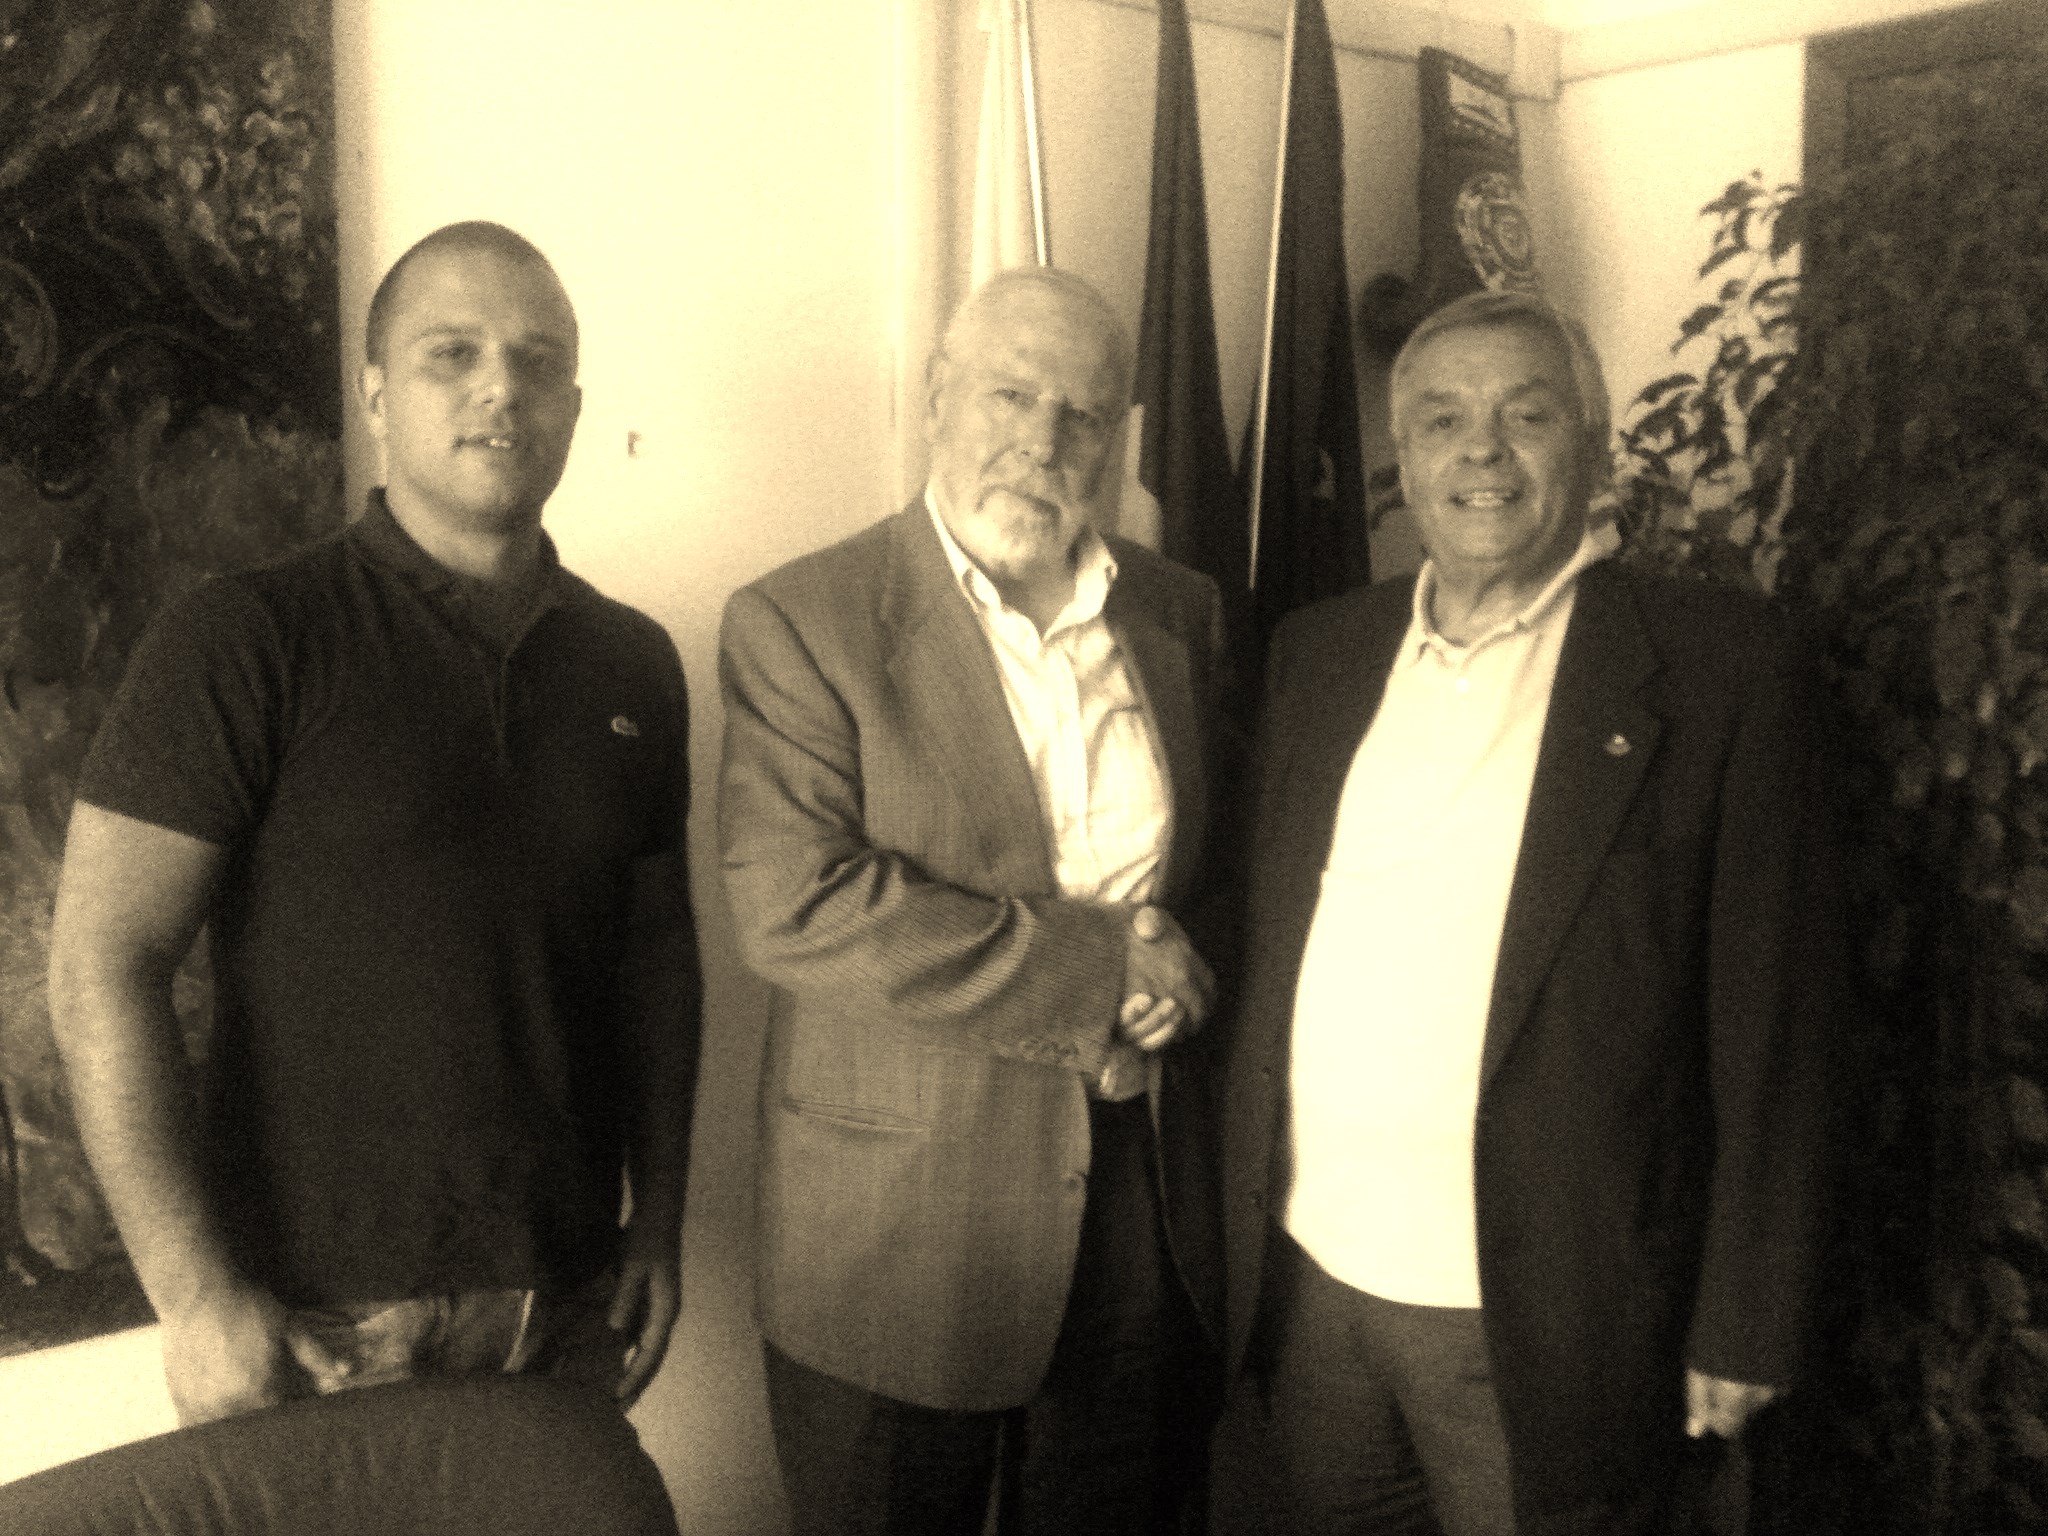 Il Presidente FPI Brasca incontra i vertici del sindacato autonomo di Boxe Libersind Conf.sal.